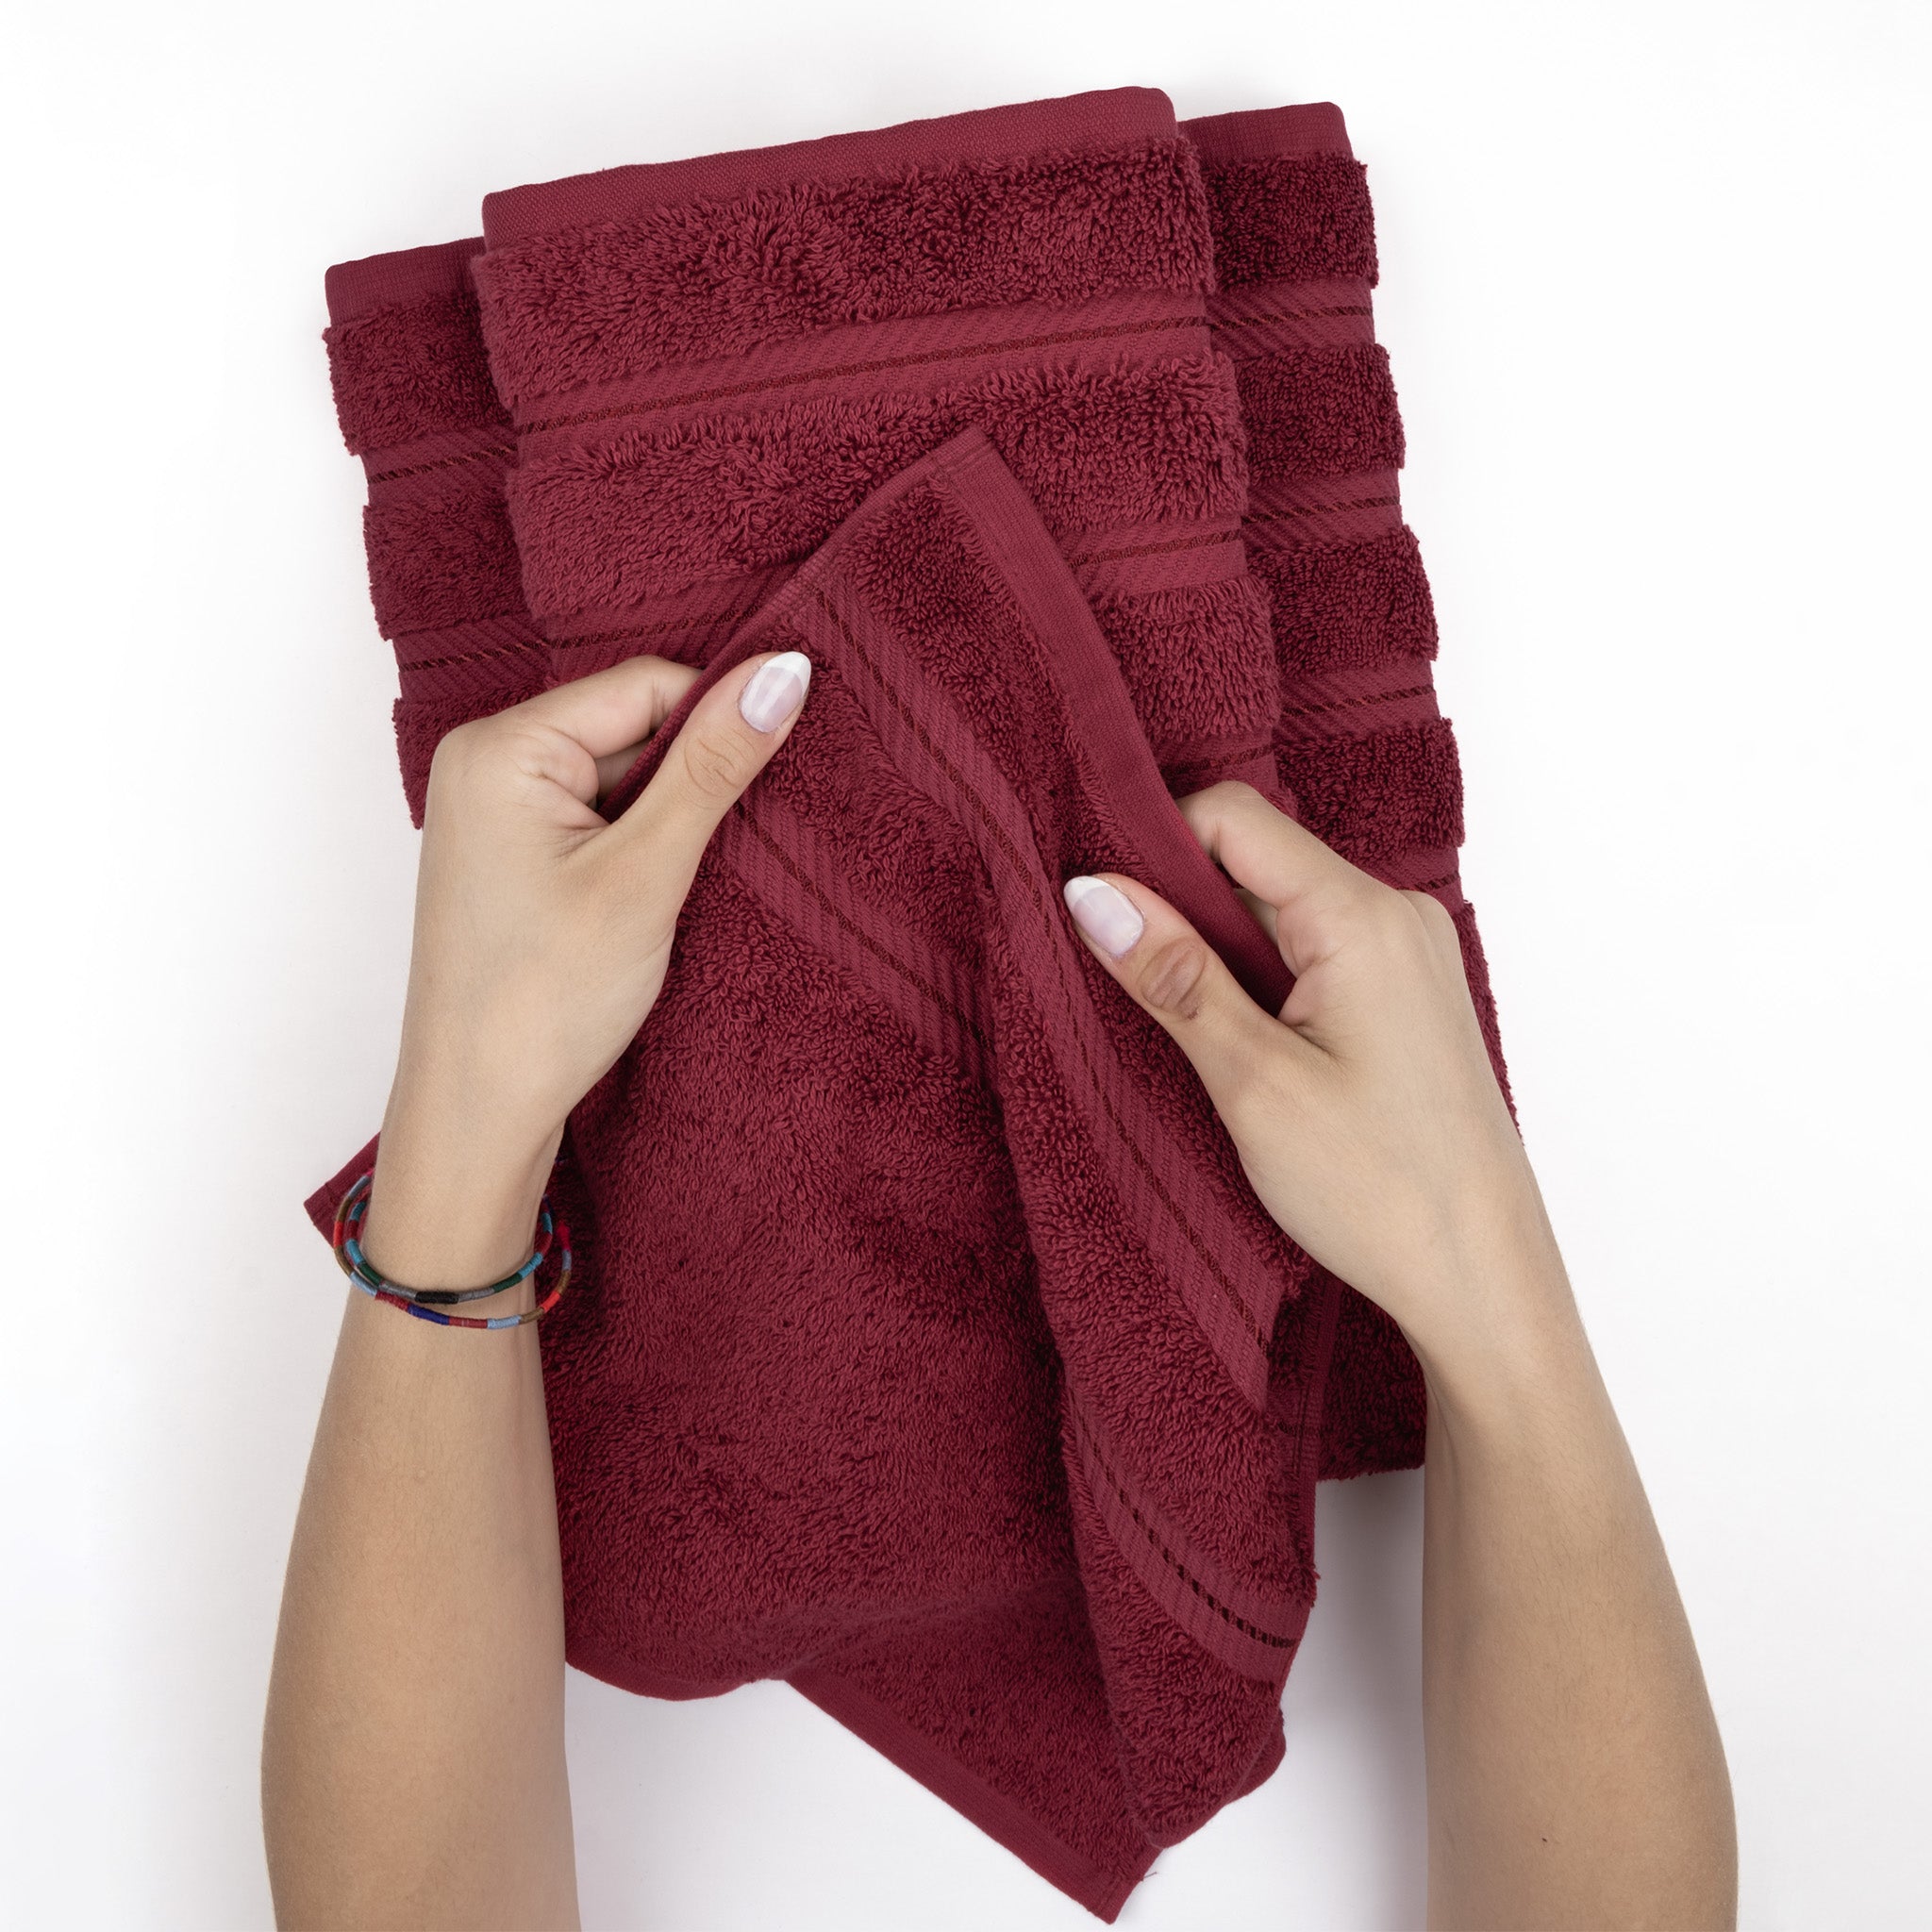 American Soft Linen 100% Turkish Cotton 6 Piece Towel Set Wholesale bordeaux-red-5